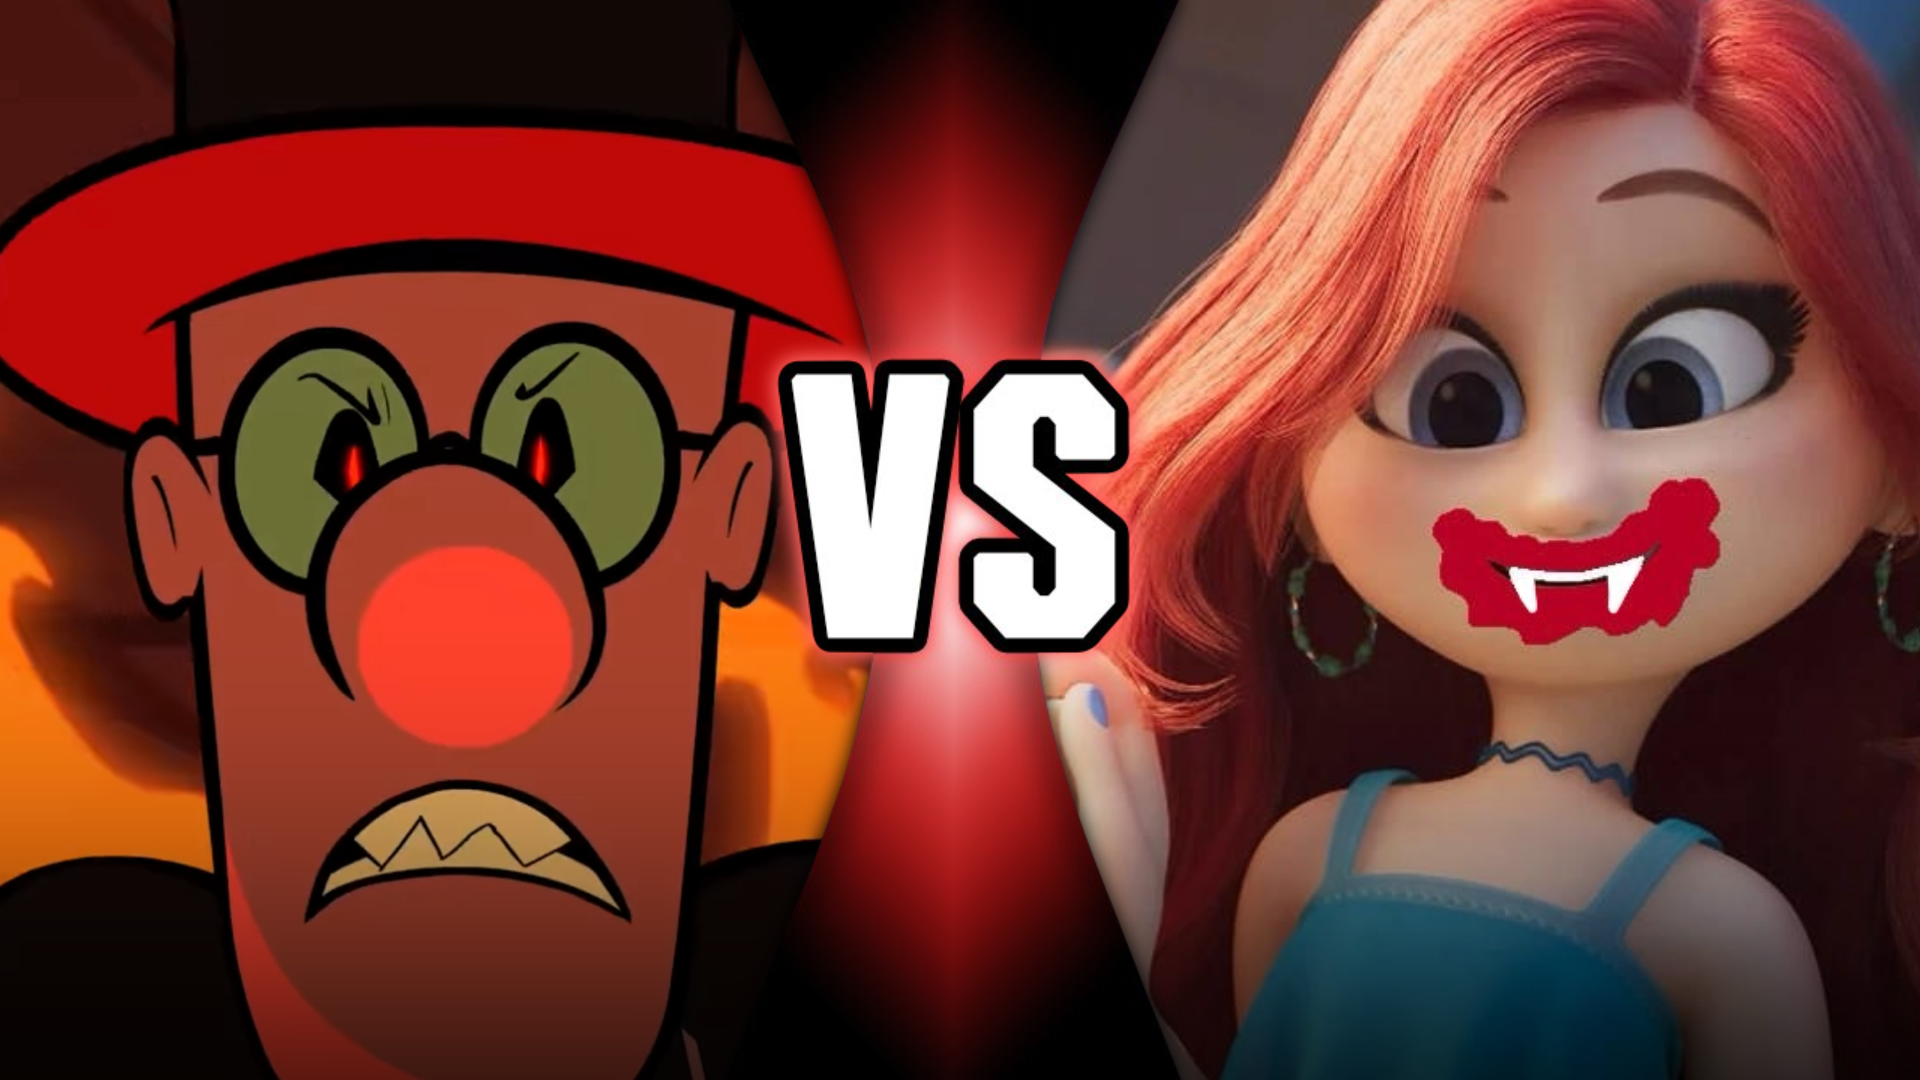 High Quality Hell Pat VS Vampire Chelsea Van Der Zee (Mashed vs. DreamWorks) Blank Meme Template